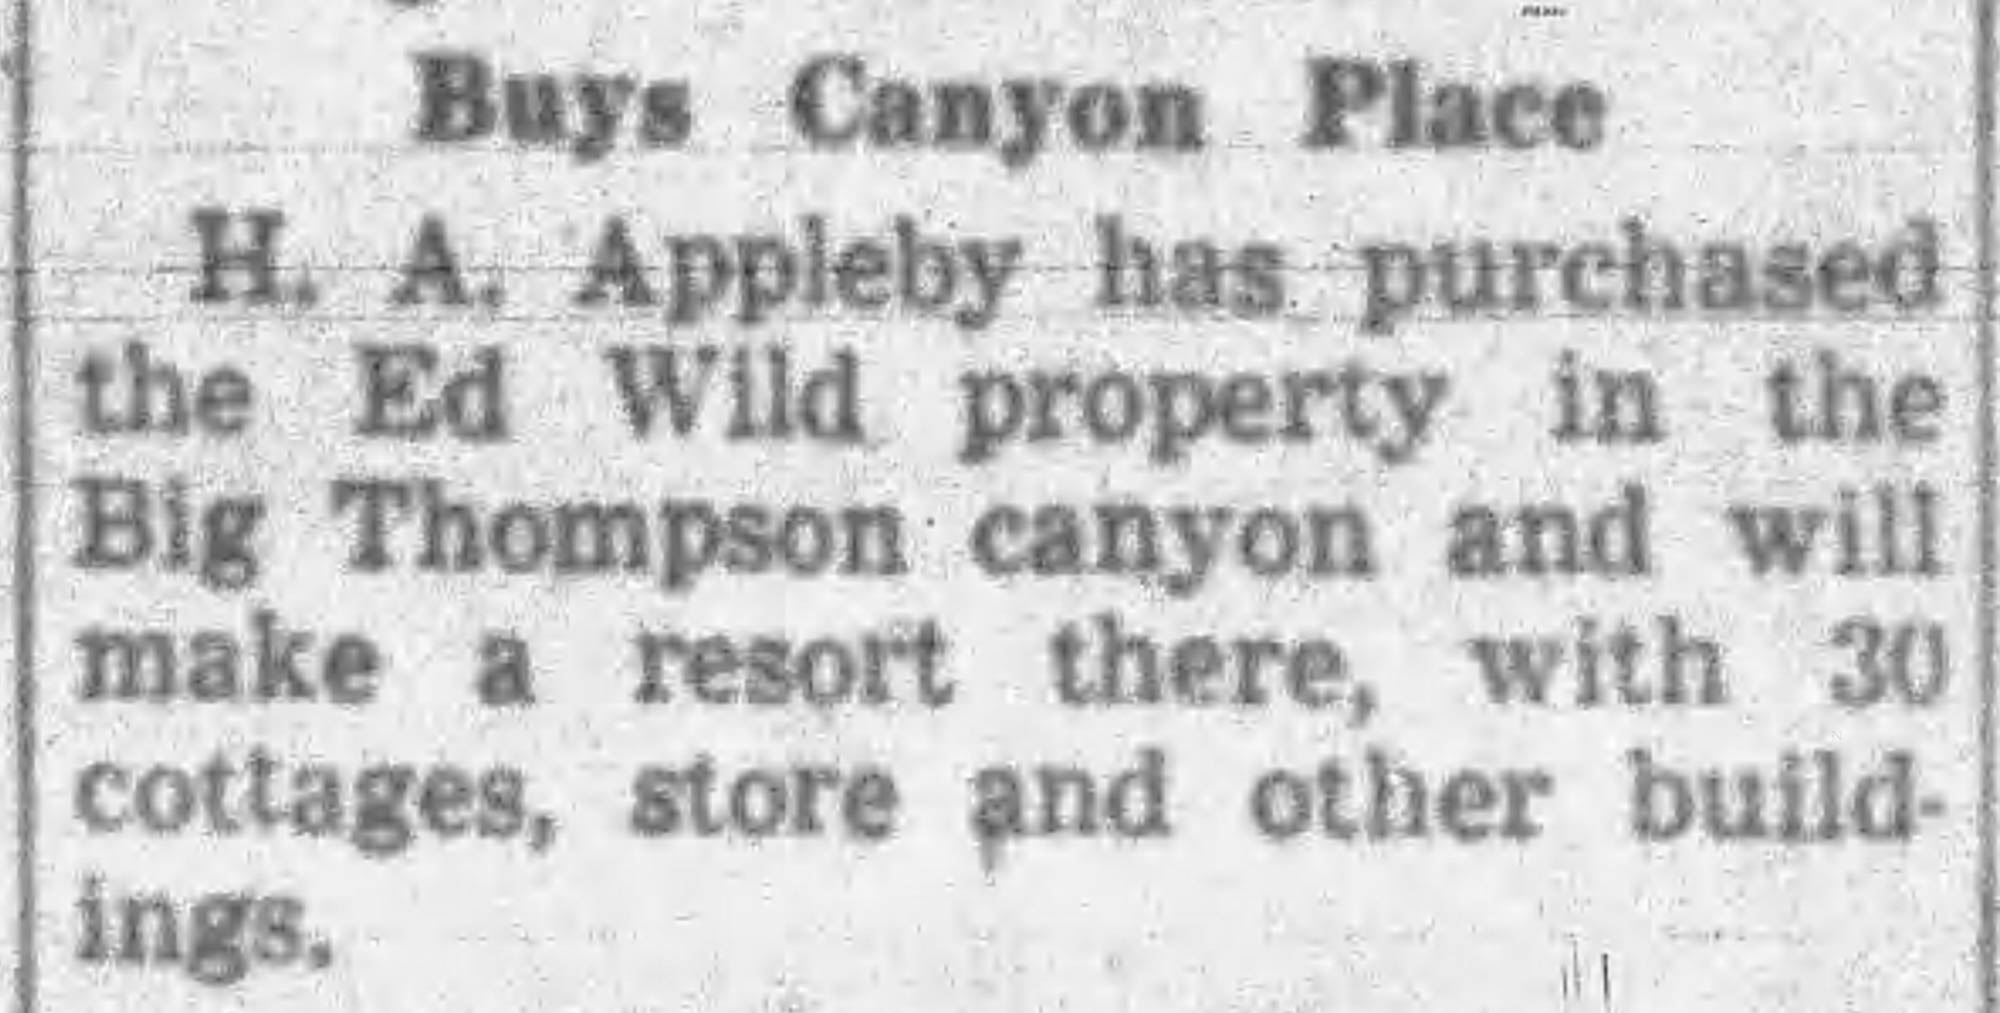 Idlewild Lodge - idlewildlodge.github.io - 1946-09-13 - Fort Collins Coloradan - Appleby purchases Ed Wild property